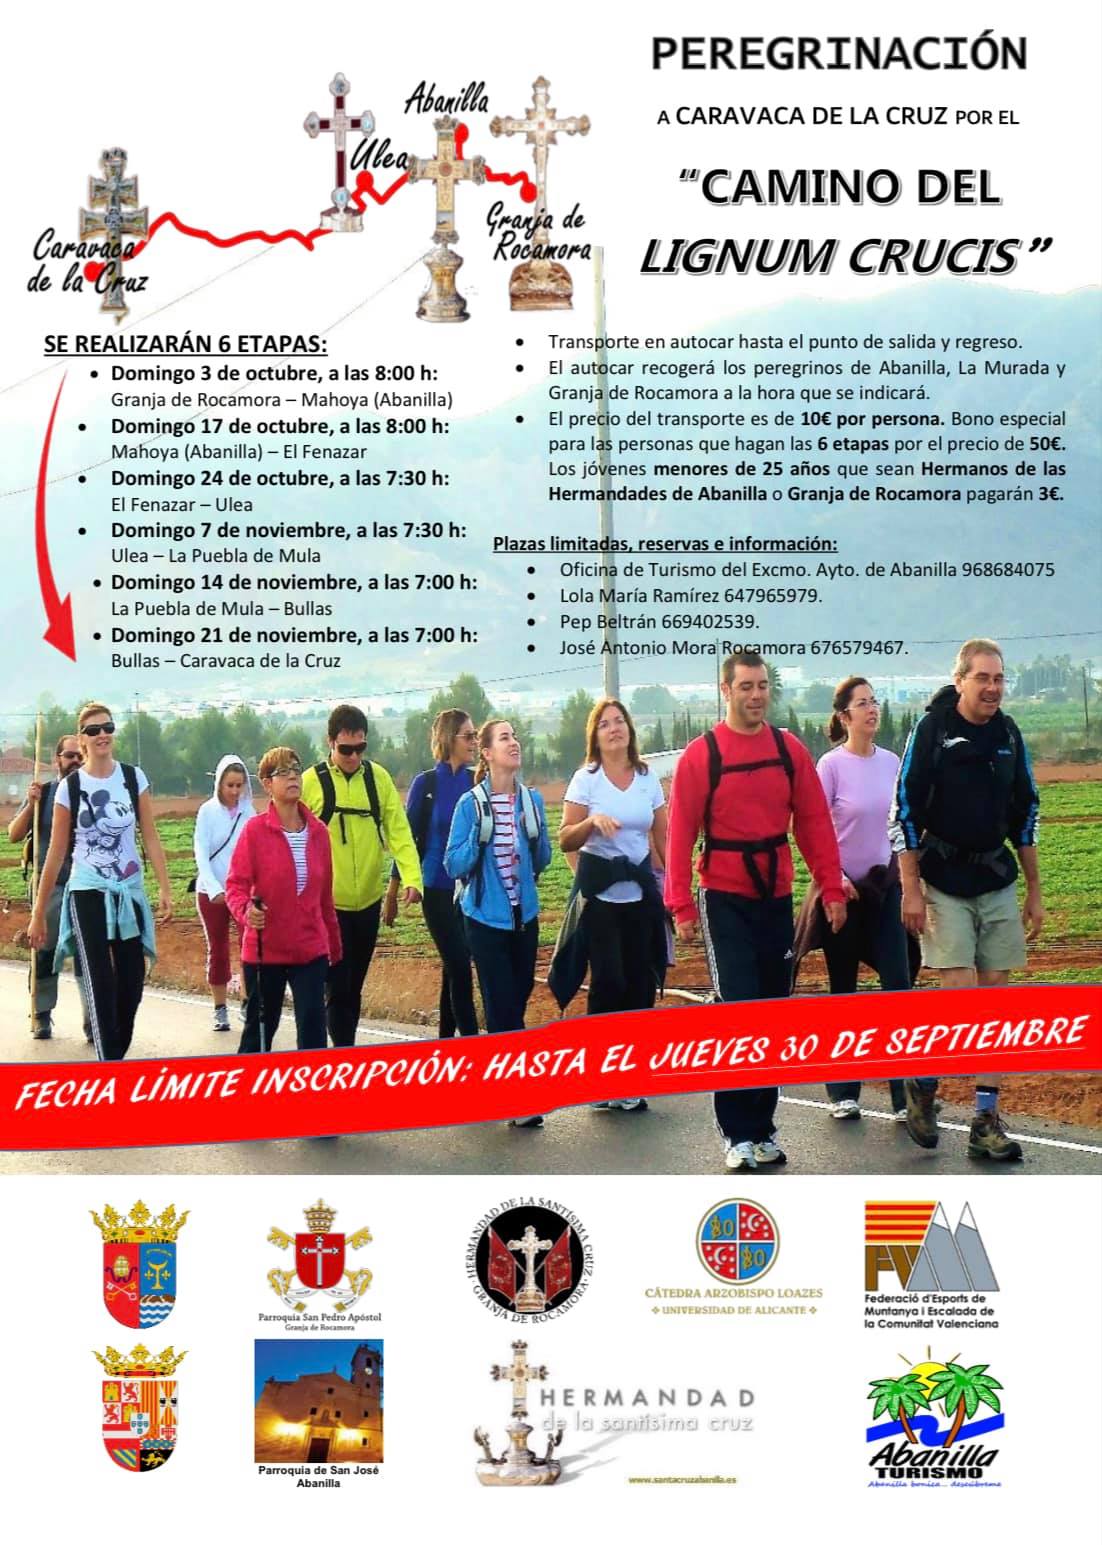 Peregrinación a Caravaca de la Cruz por el “Camino del Lignum Crucis” 2021